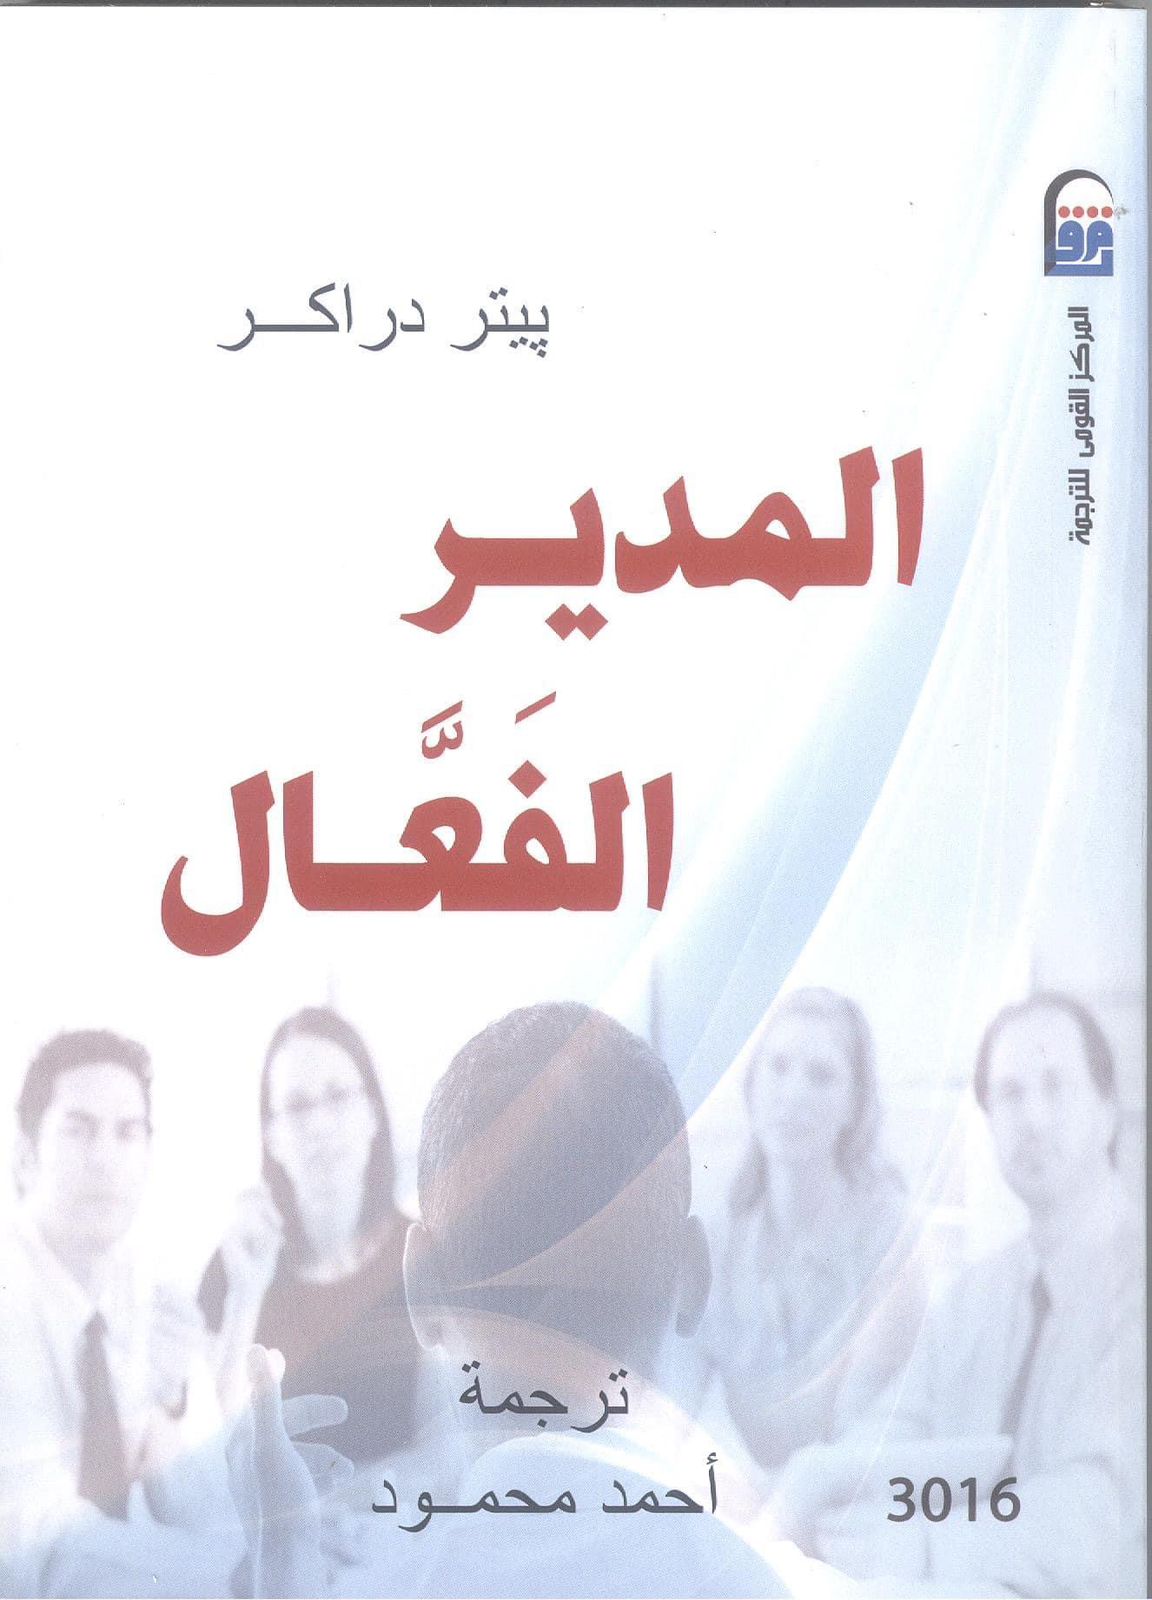 المركز القومي للترجمة يقدم خصم 50% على مجموعة كبيرة من اصداراته حتى نهاية شهر رمضان